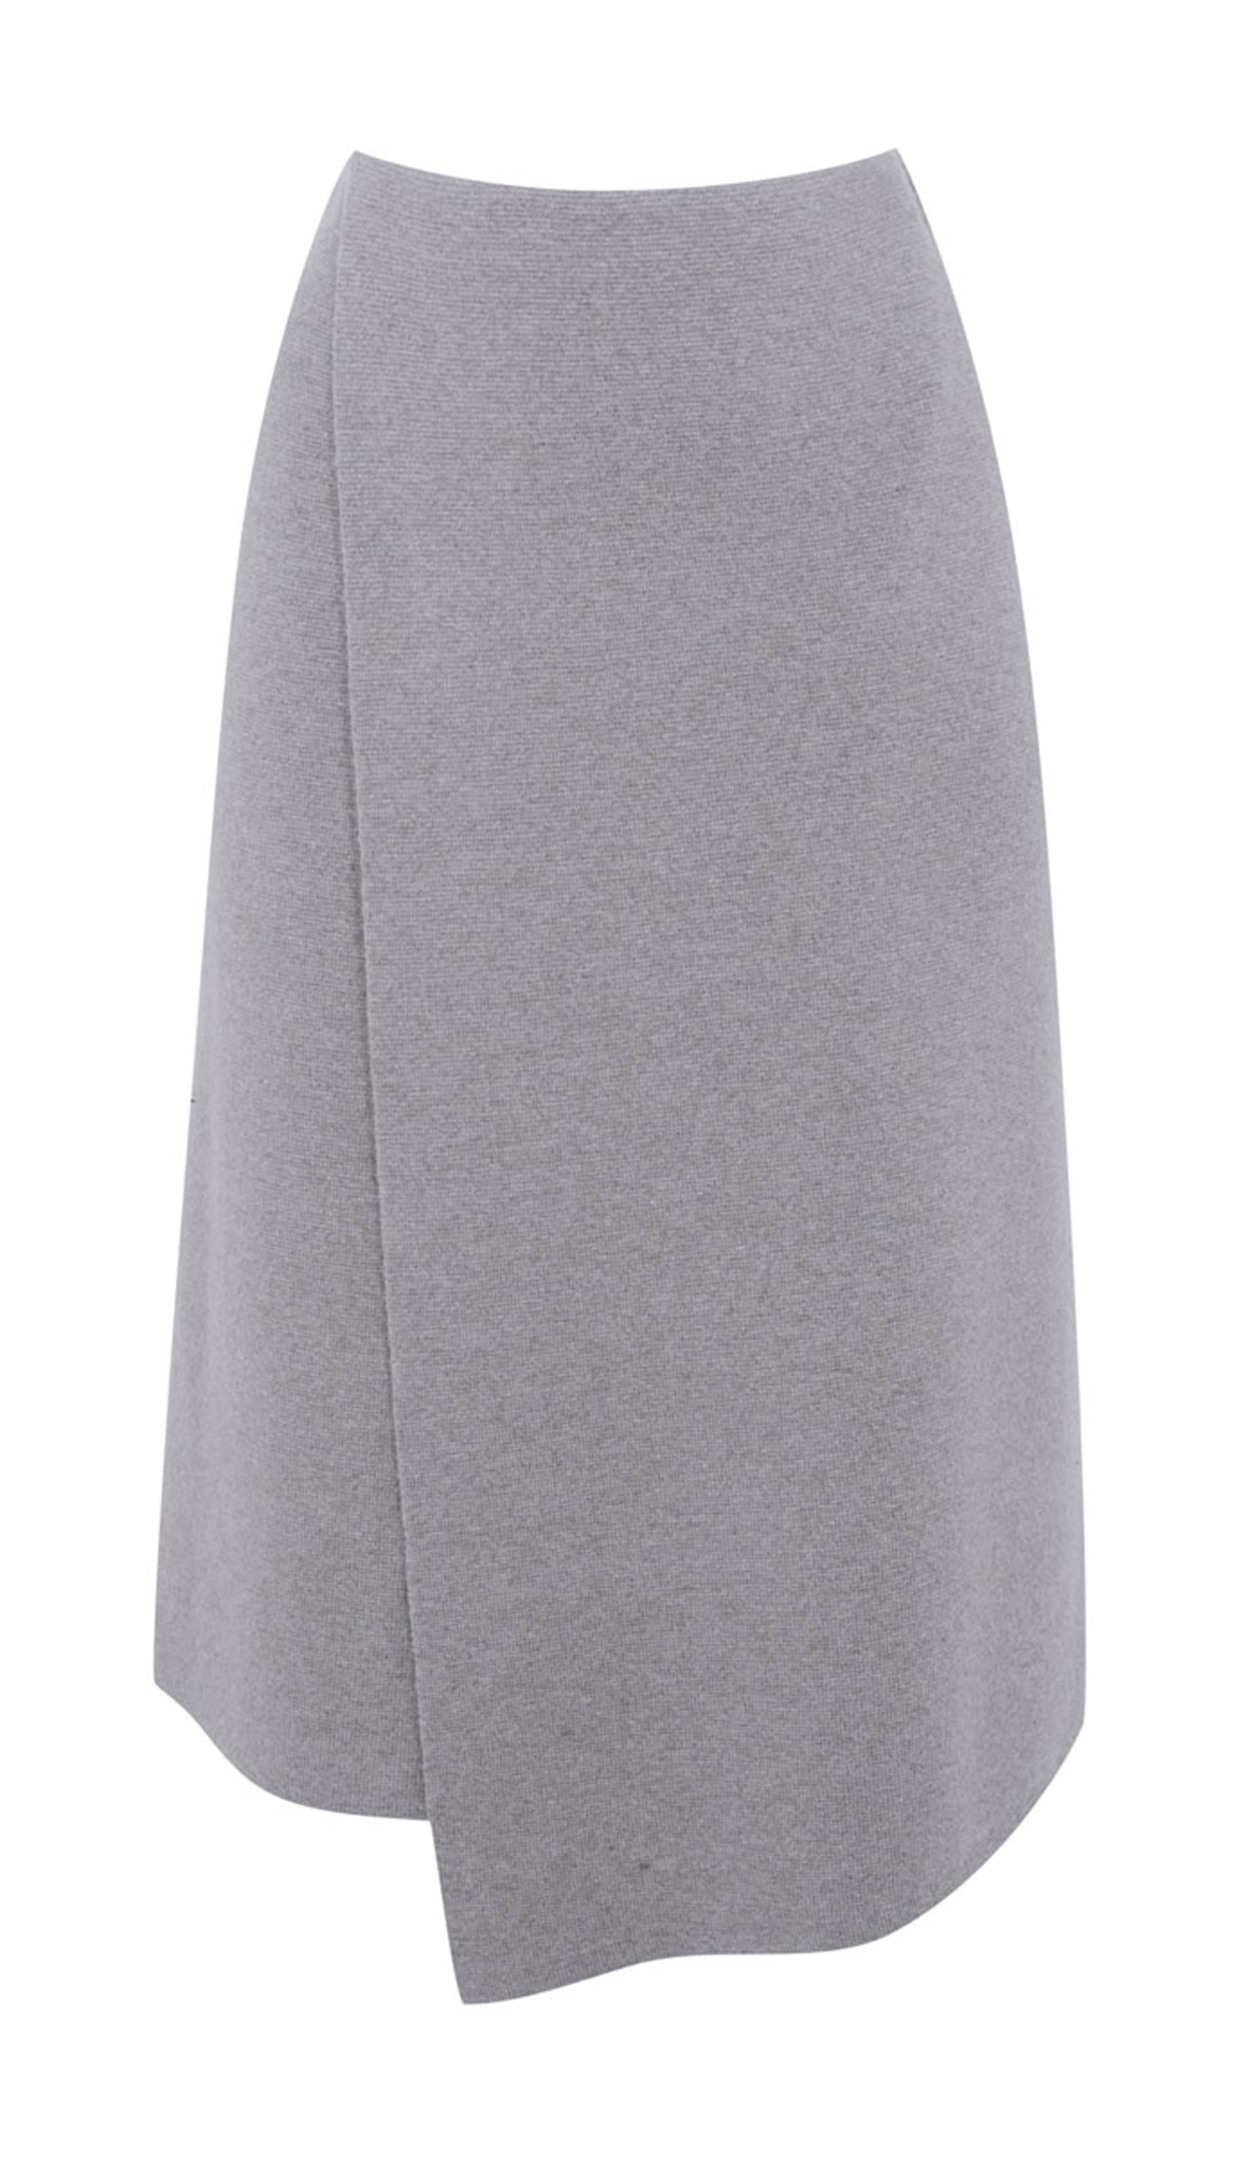 Skirt, £40, Debenhams